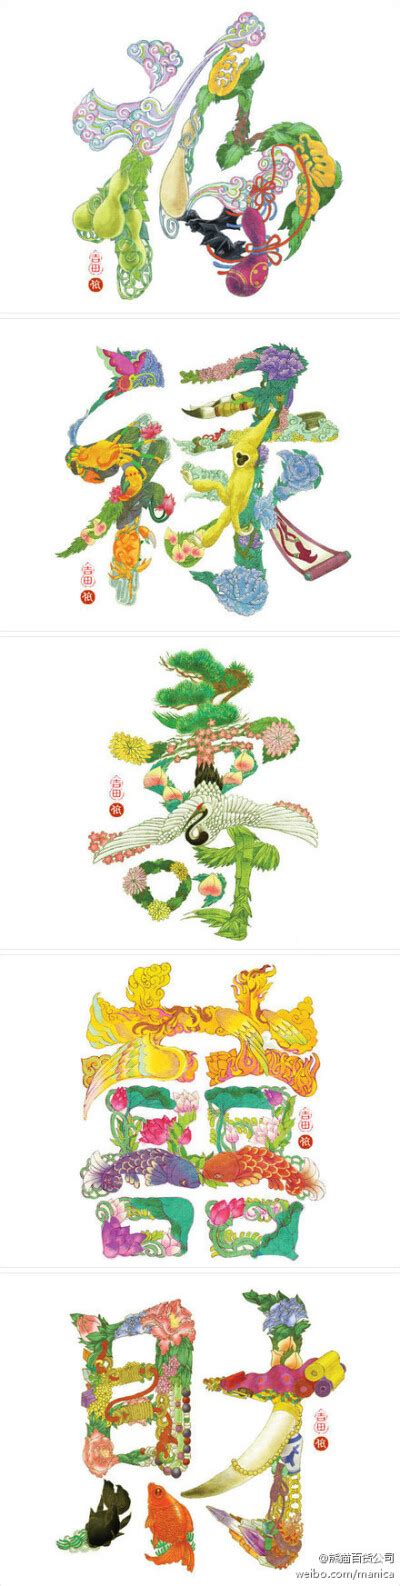 藏海花·张起灵 by Lyre花酒清明 - 高清图片，堆糖，美图壁纸兴趣社区